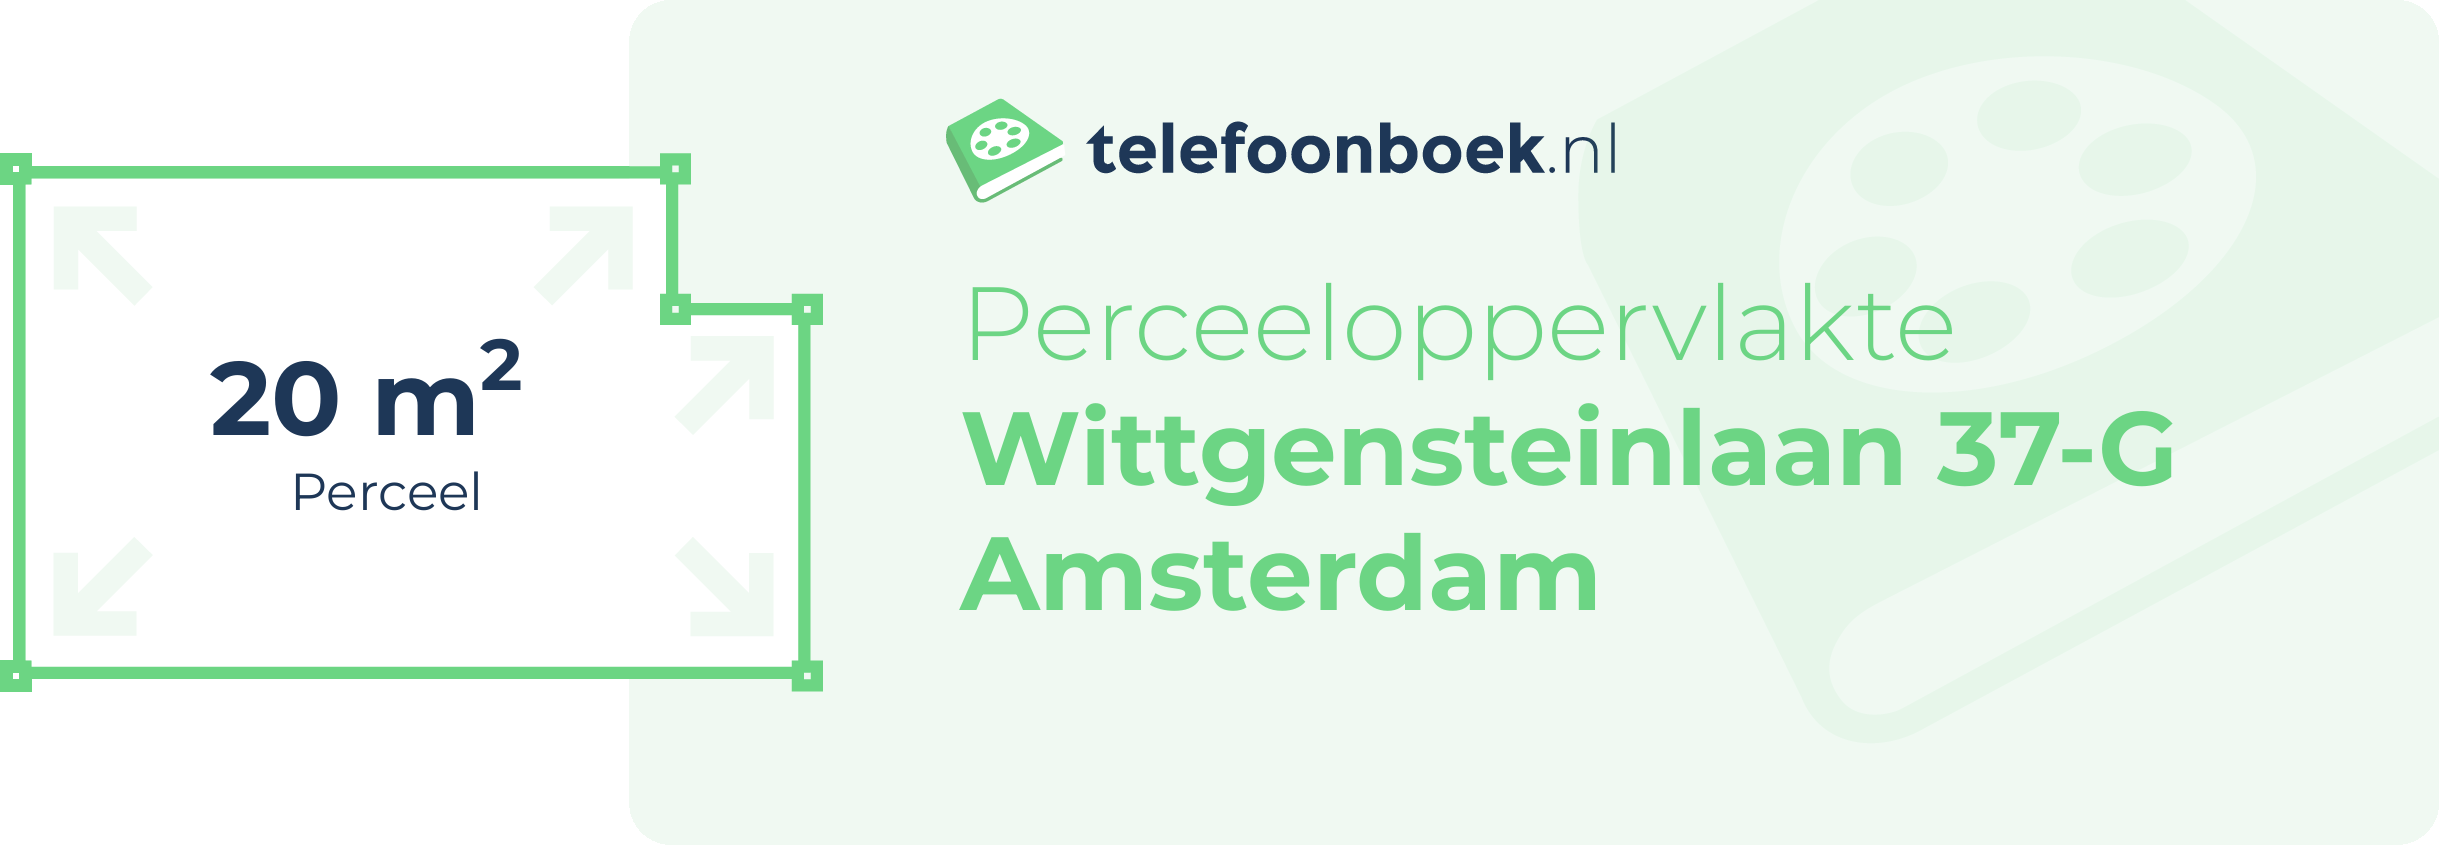 Perceeloppervlakte Wittgensteinlaan 37-G Amsterdam